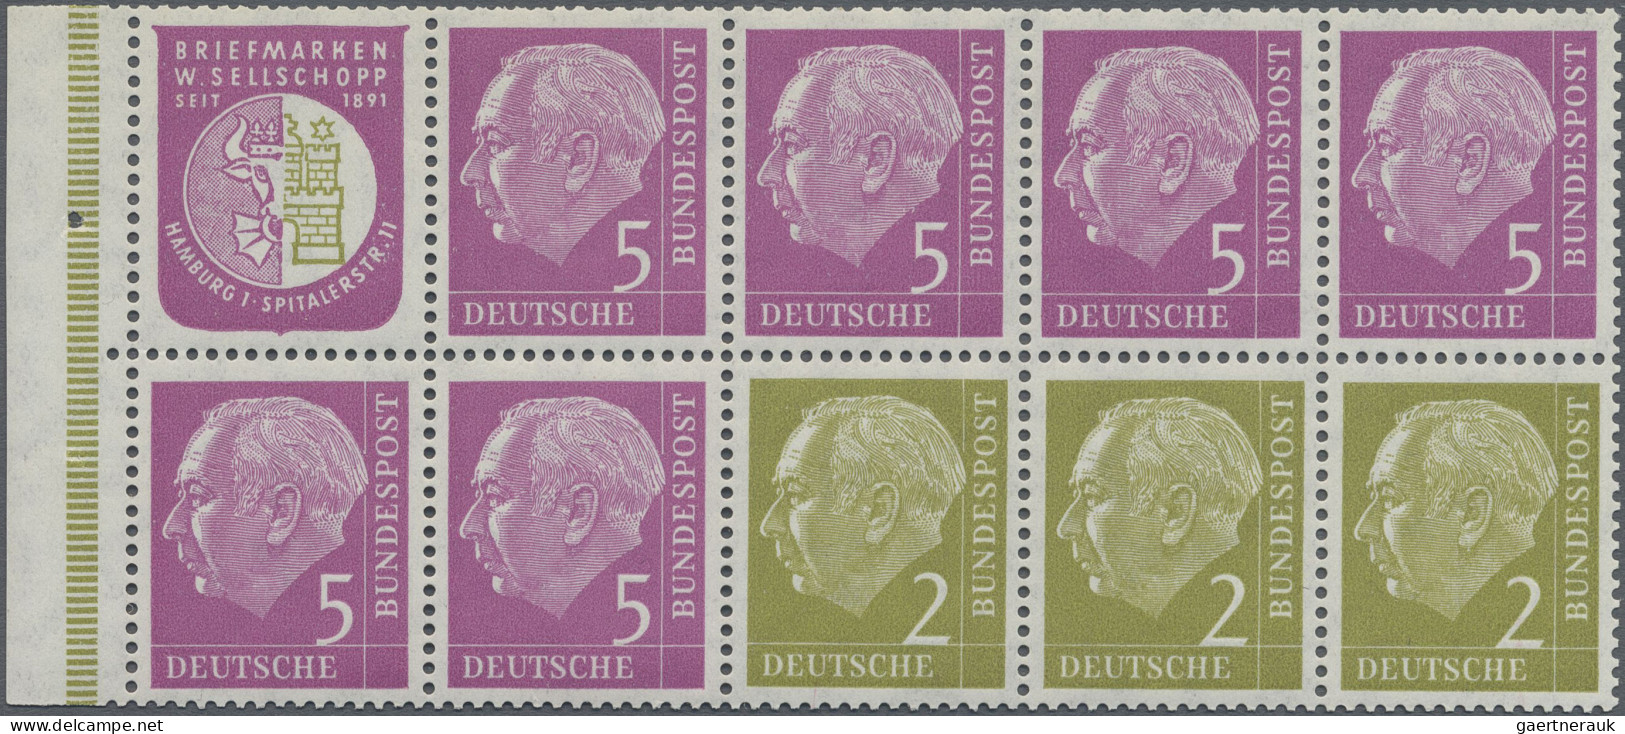 Bundesrepublik - Zusammendrucke: 1956, Heuss I, H.-Blatt 6, postfrisch, gestempe